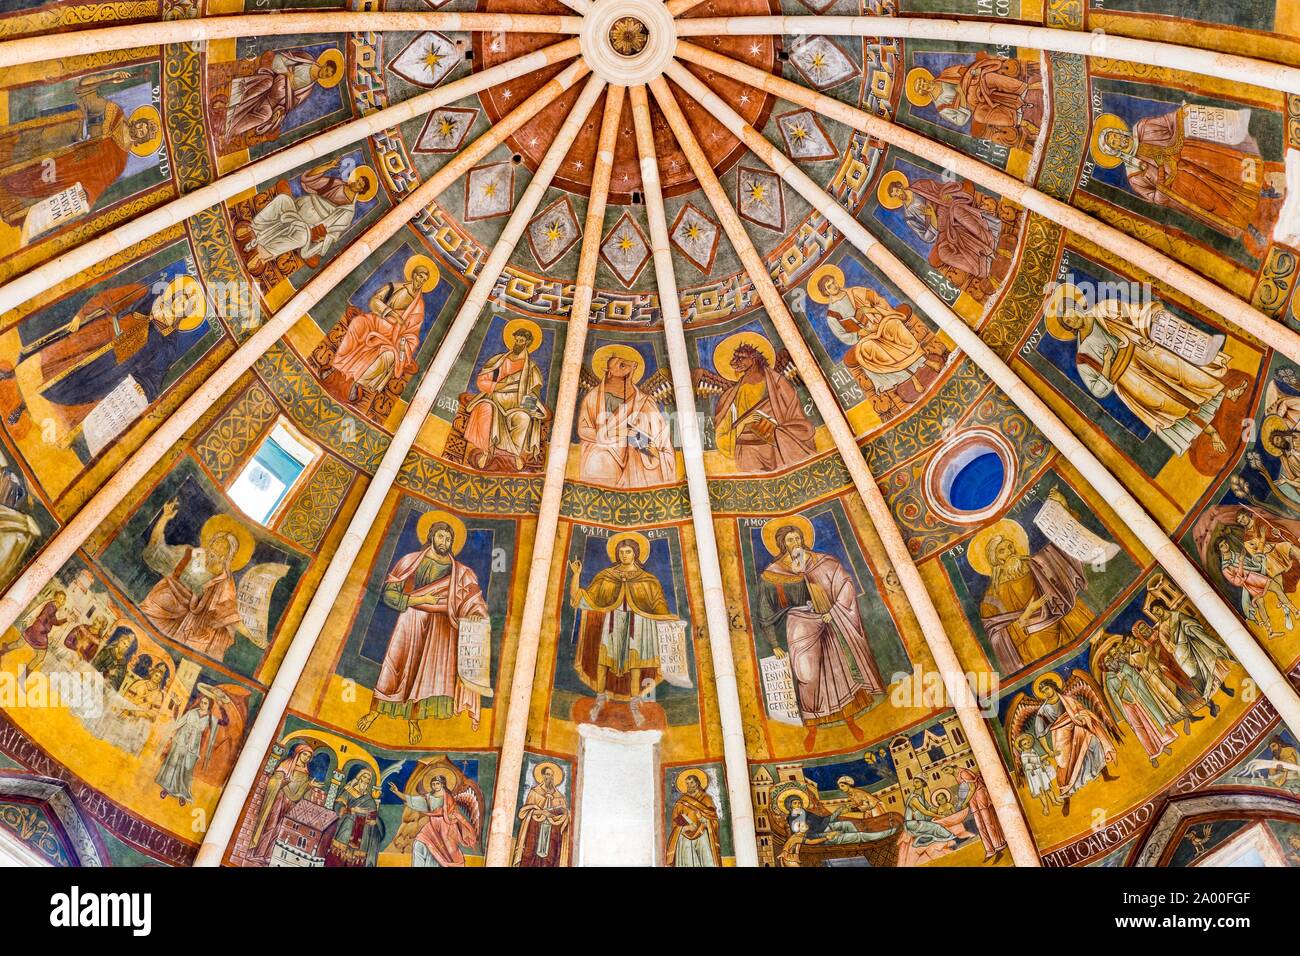 Dôme avec fresques romanes, baptistère, Parme, Emilie-Romagne, Italie Banque D'Images